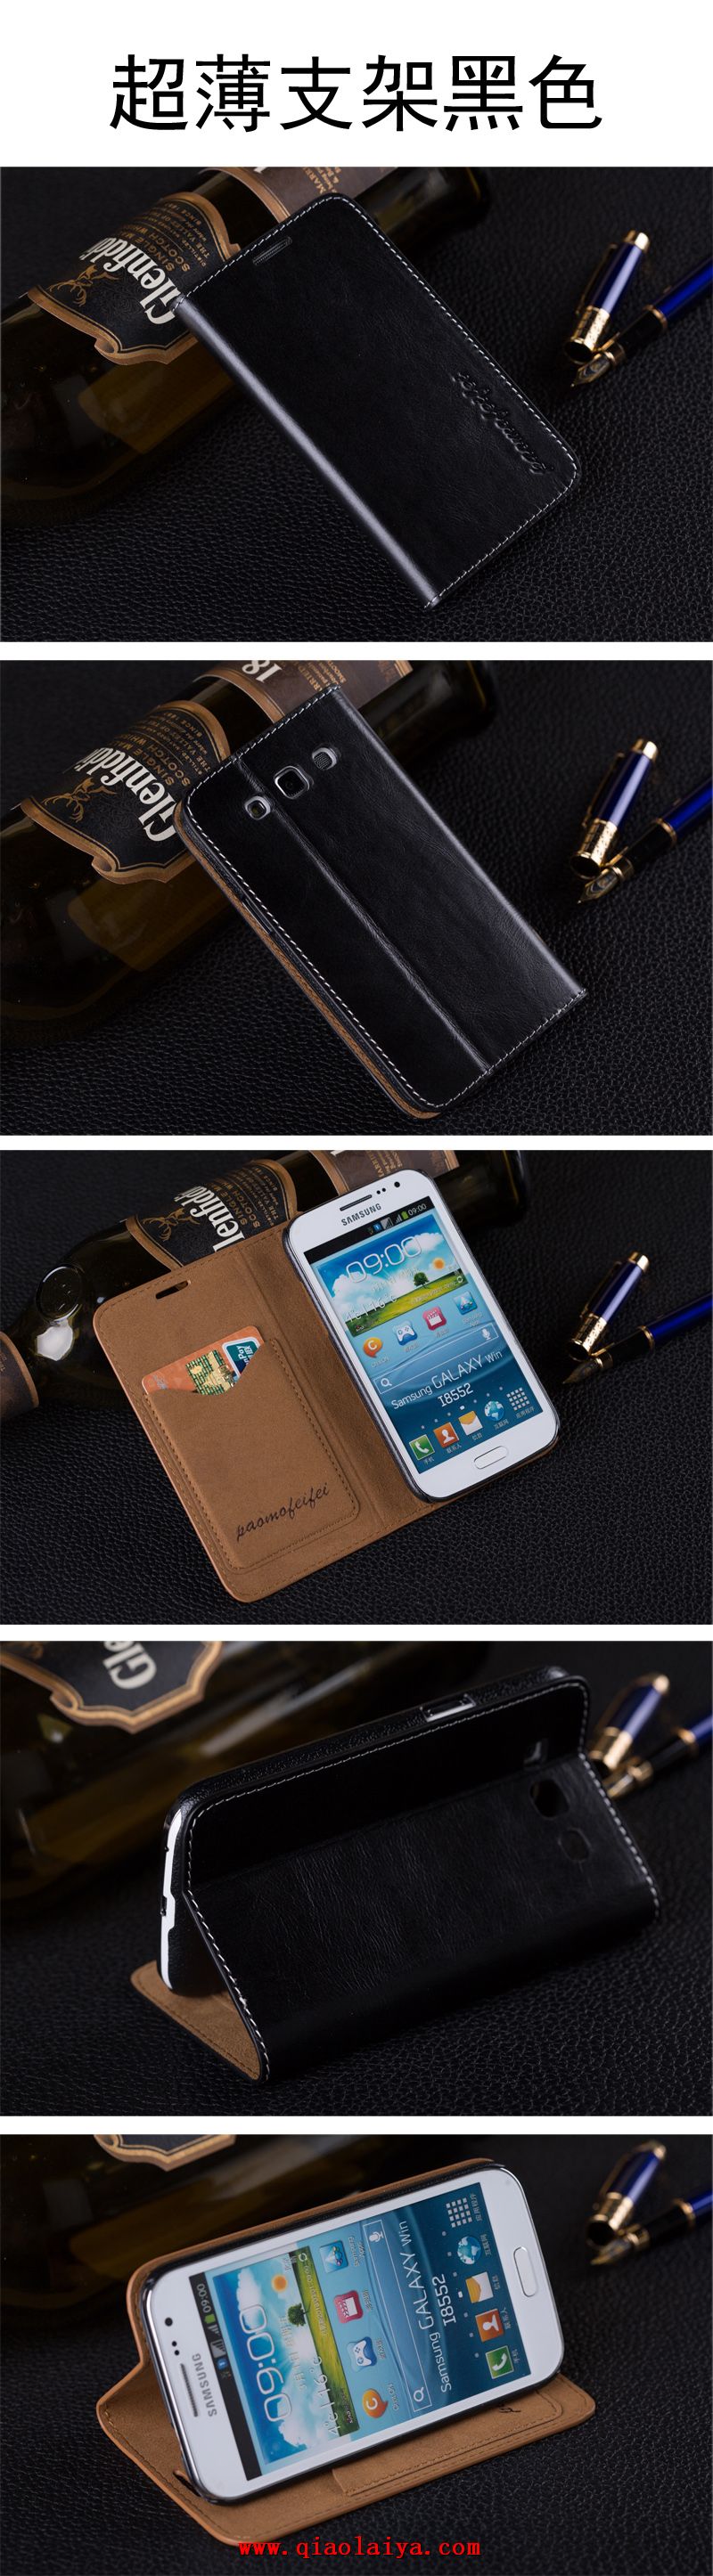 Samsung i8558 téléphone portable étui Galaxy Win téléphone portable coque de protection